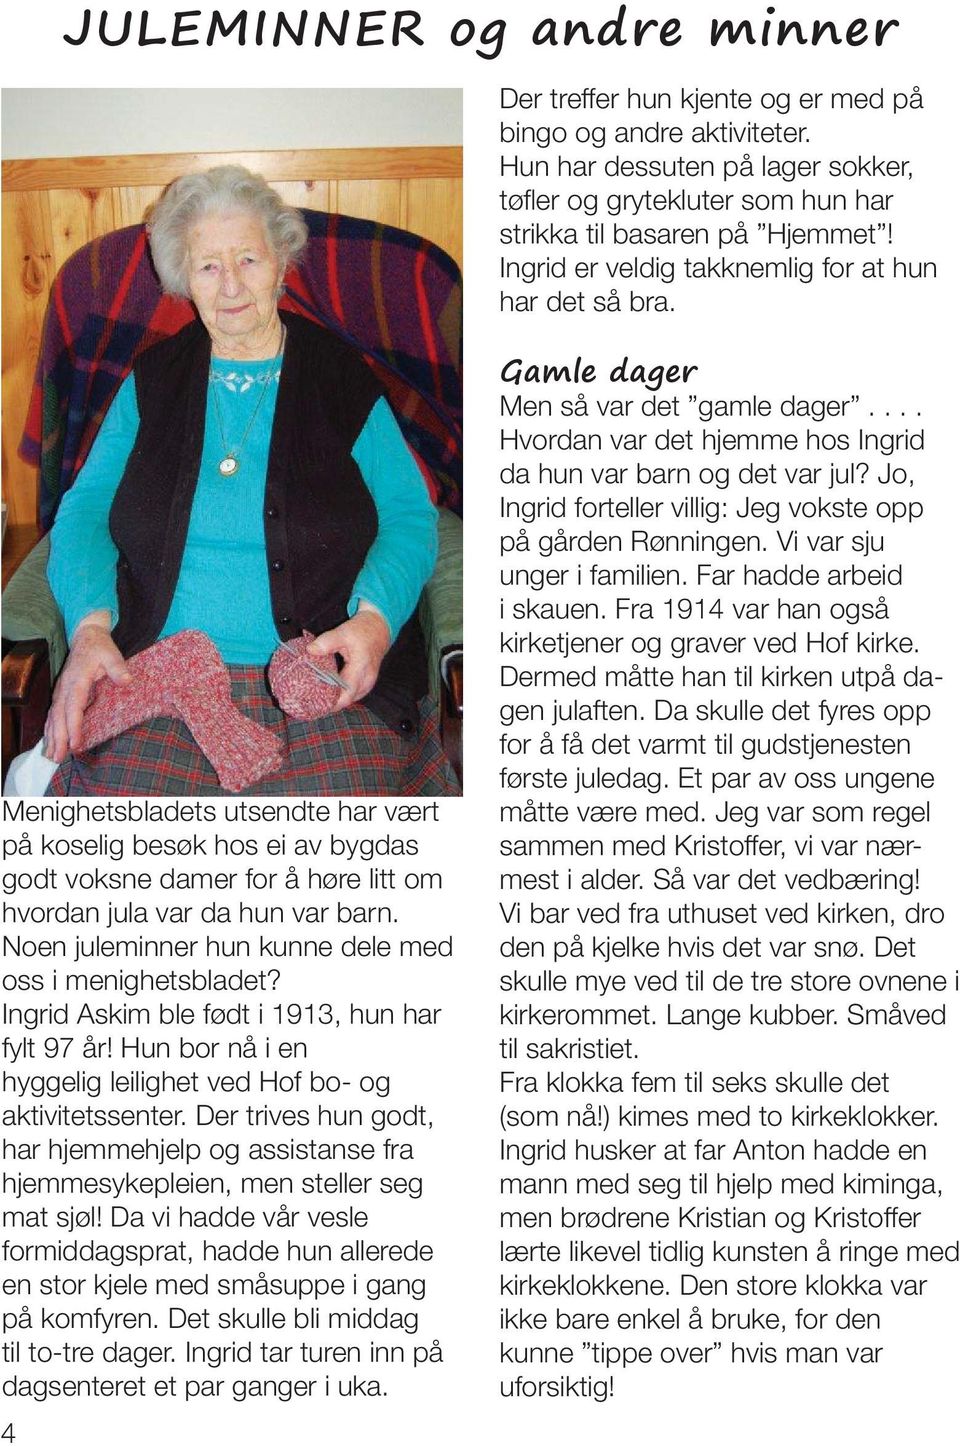 Noen juleminner hun kunne dele med oss i menighetsbladet? Ingrid Askim ble født i 1913, hun har fylt 97 år! Hun bor nå i en hyggelig leilighet ved Hof bo- og aktivitetssenter.